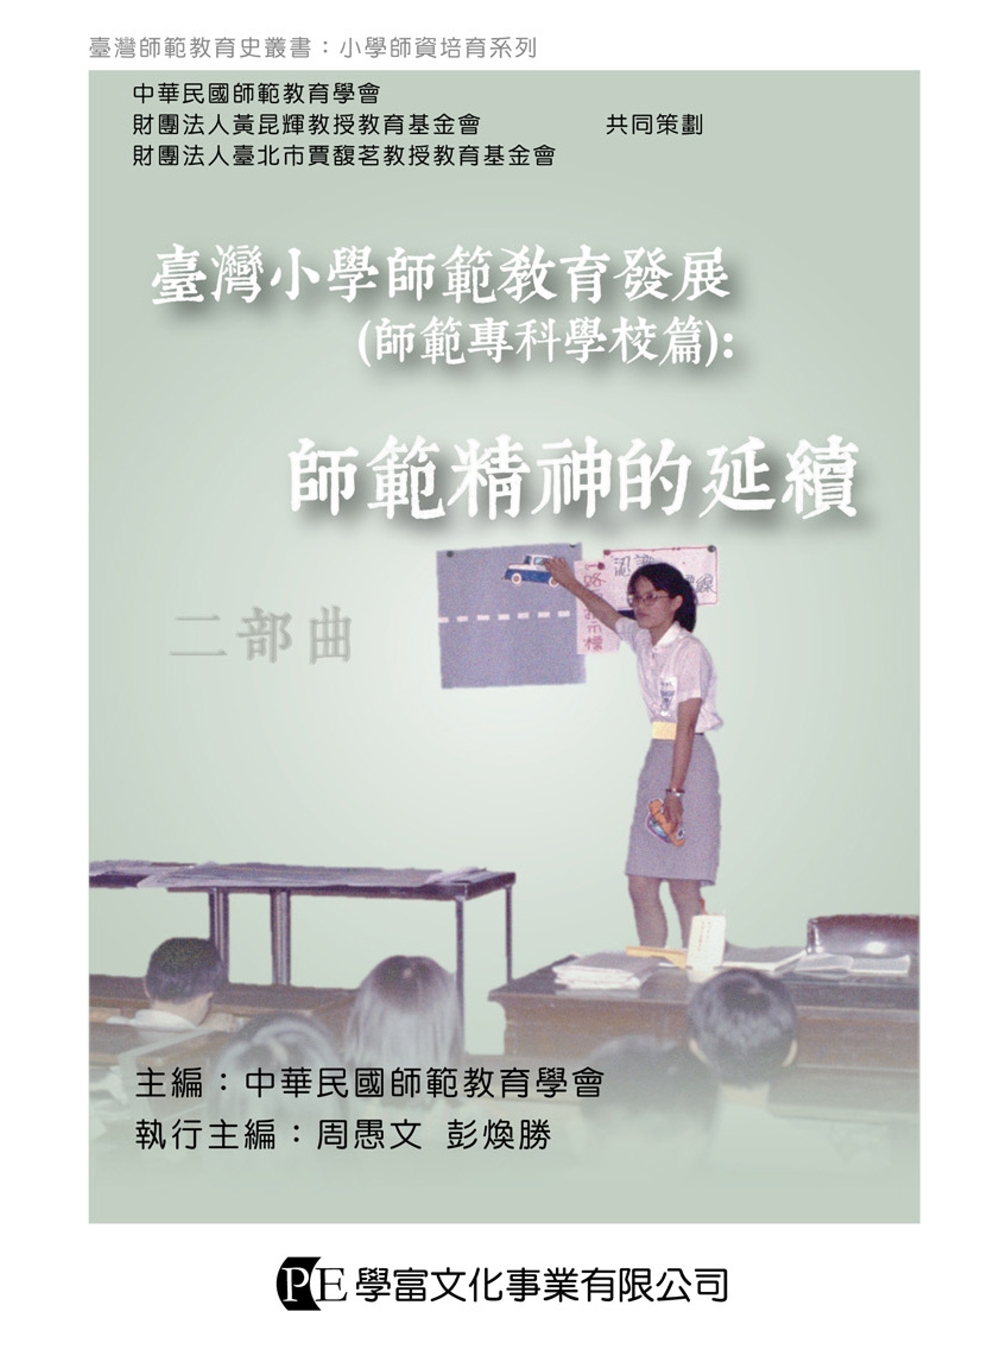 臺灣小學師範教育發展（師範專科學校篇）：師範精神的延續